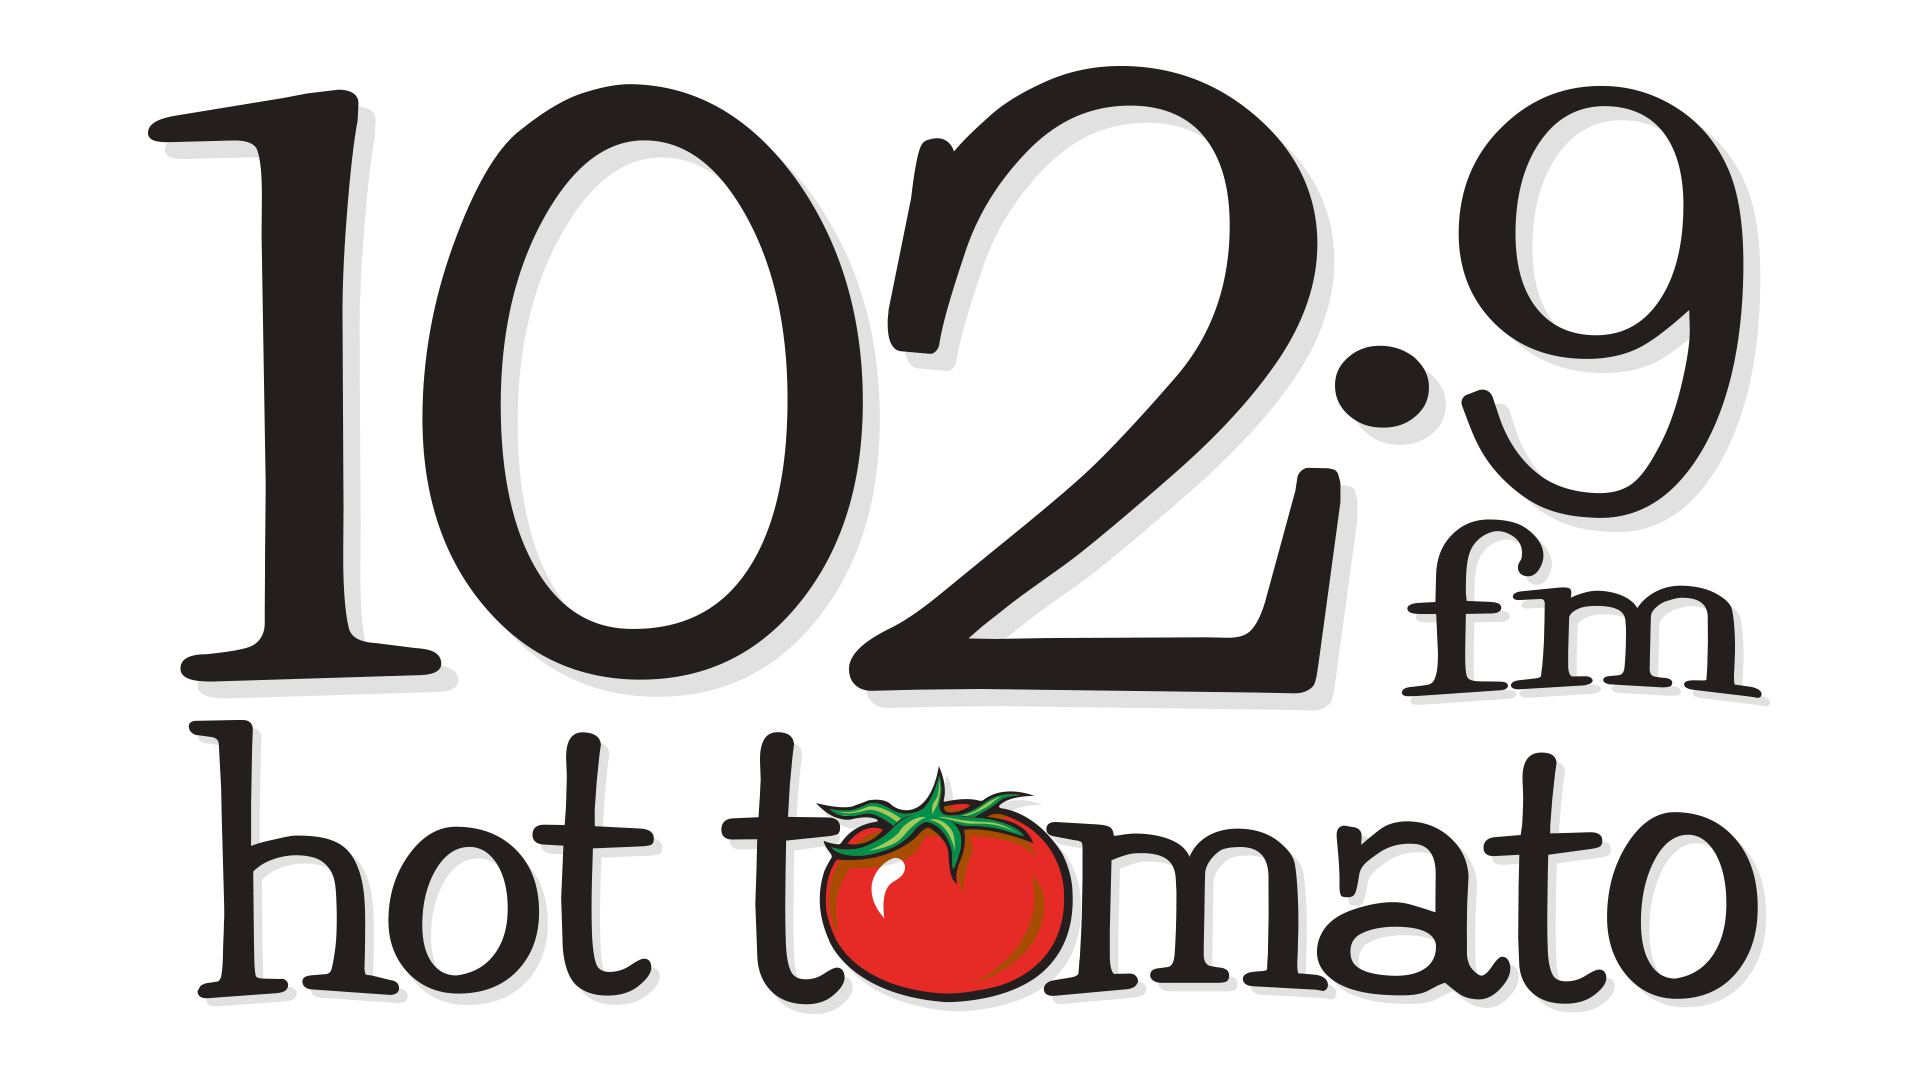 Hot Tomato 102.9